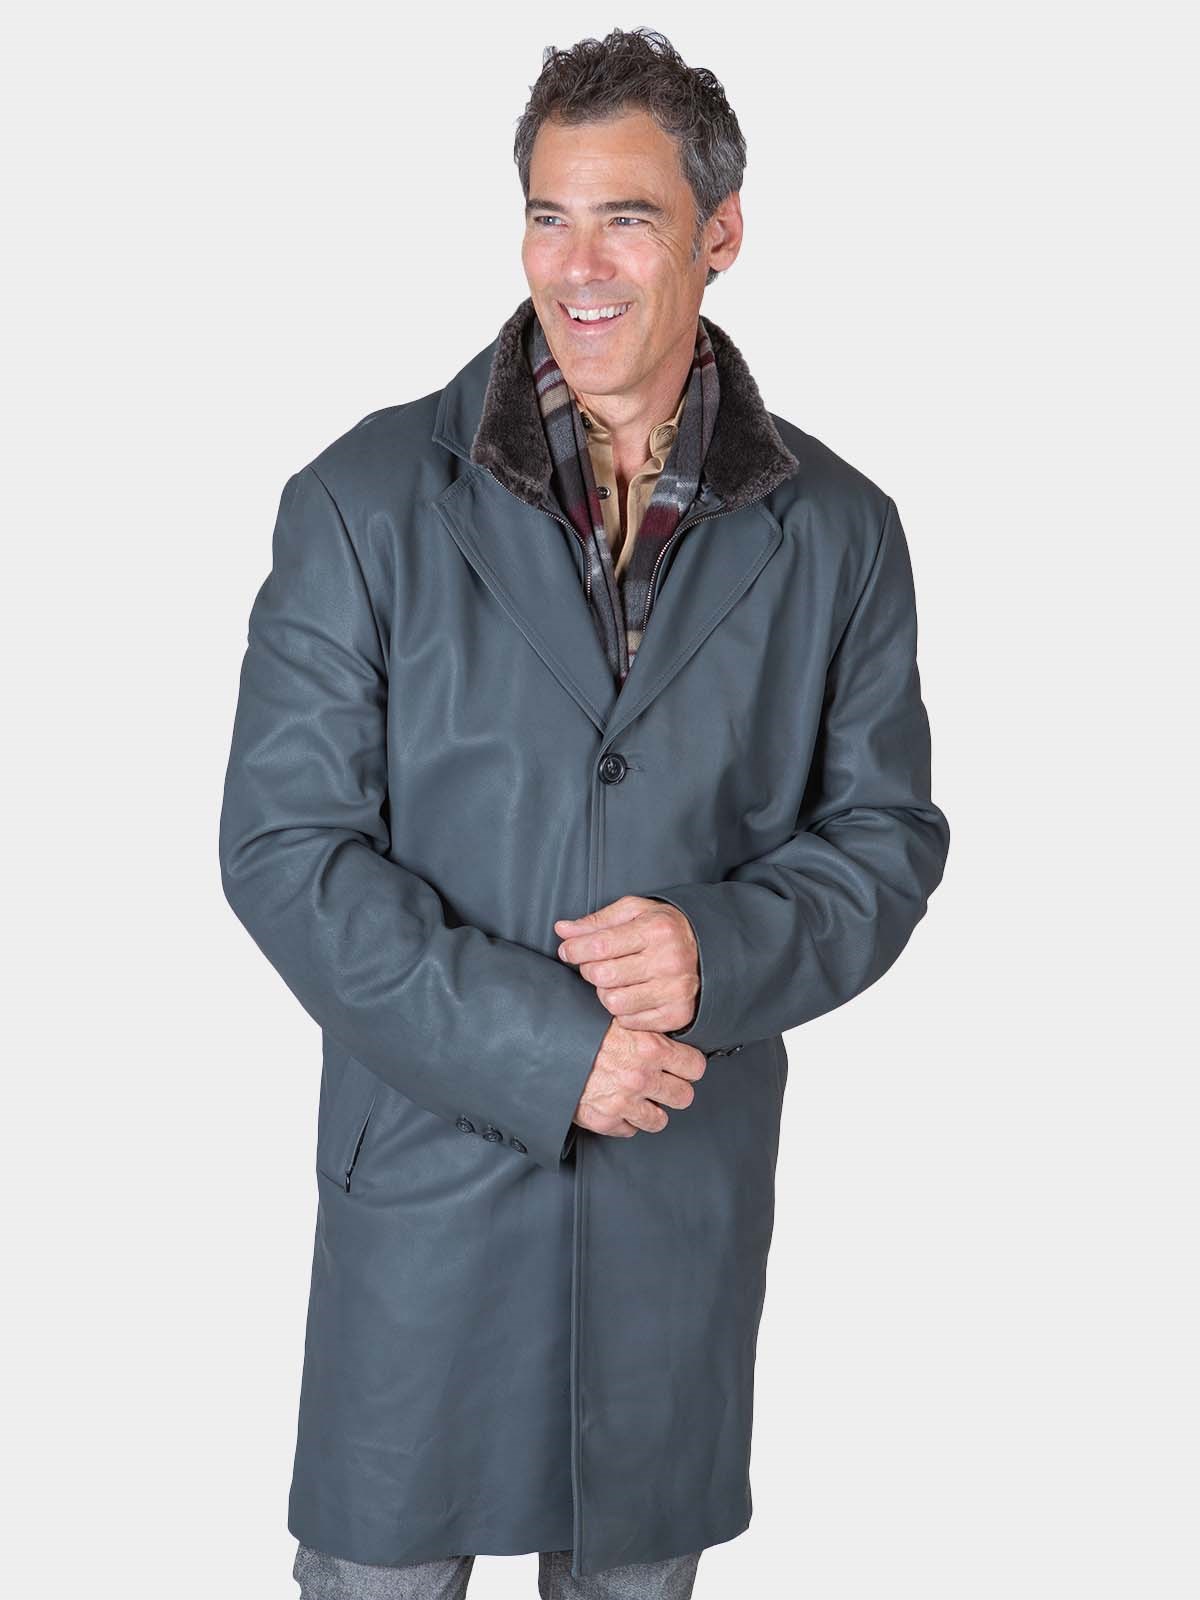 Man's Grey Leather 3/4 Coat